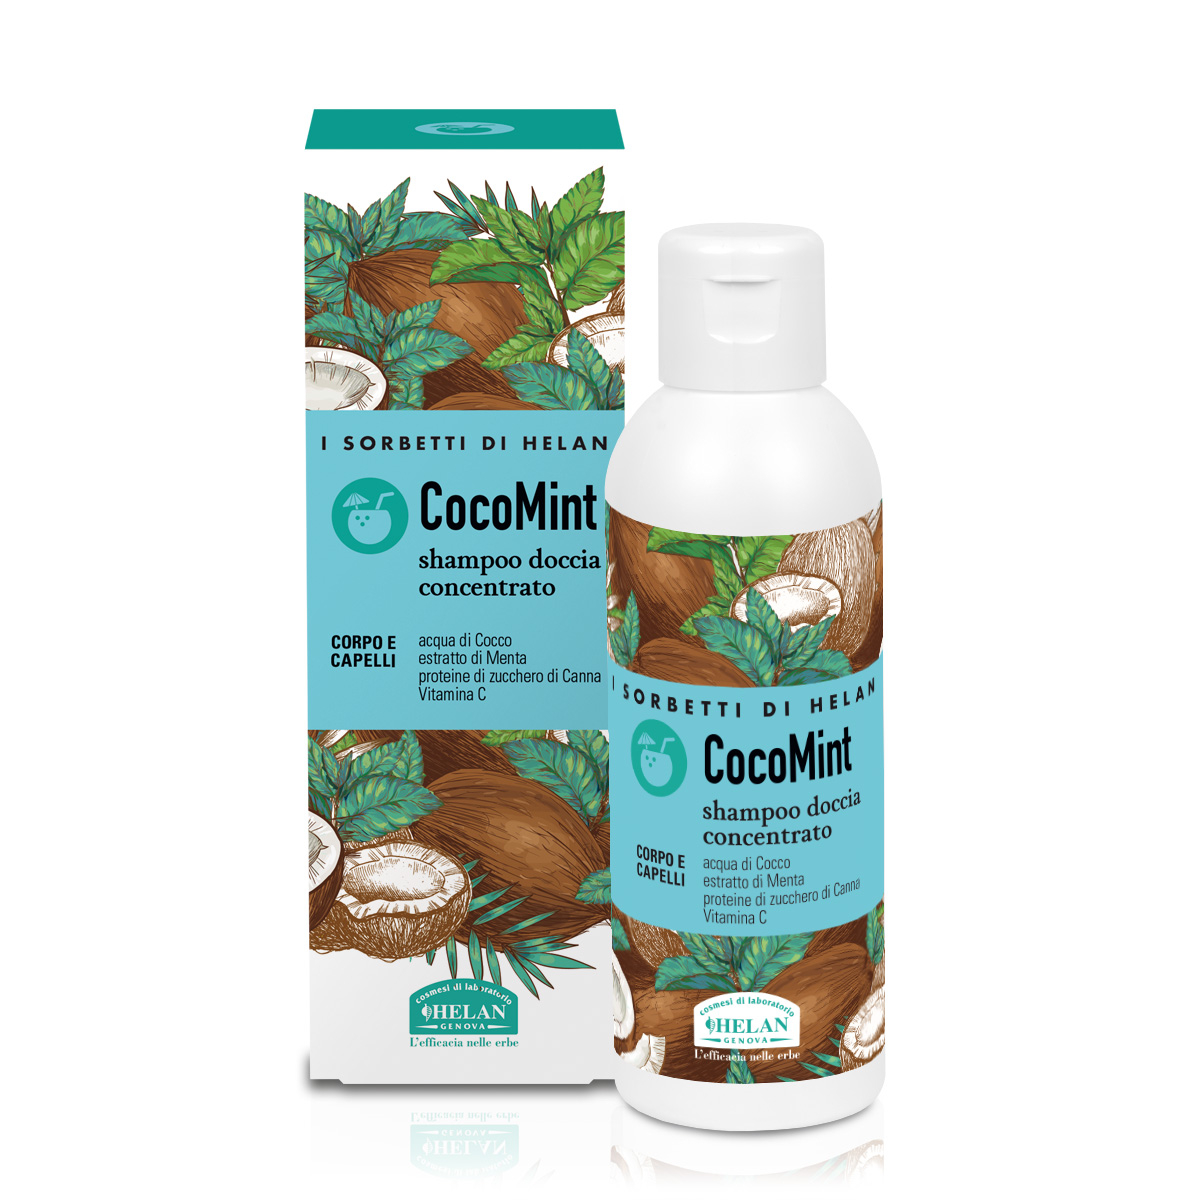 CocoMint Shampoo Doccia Concentrato